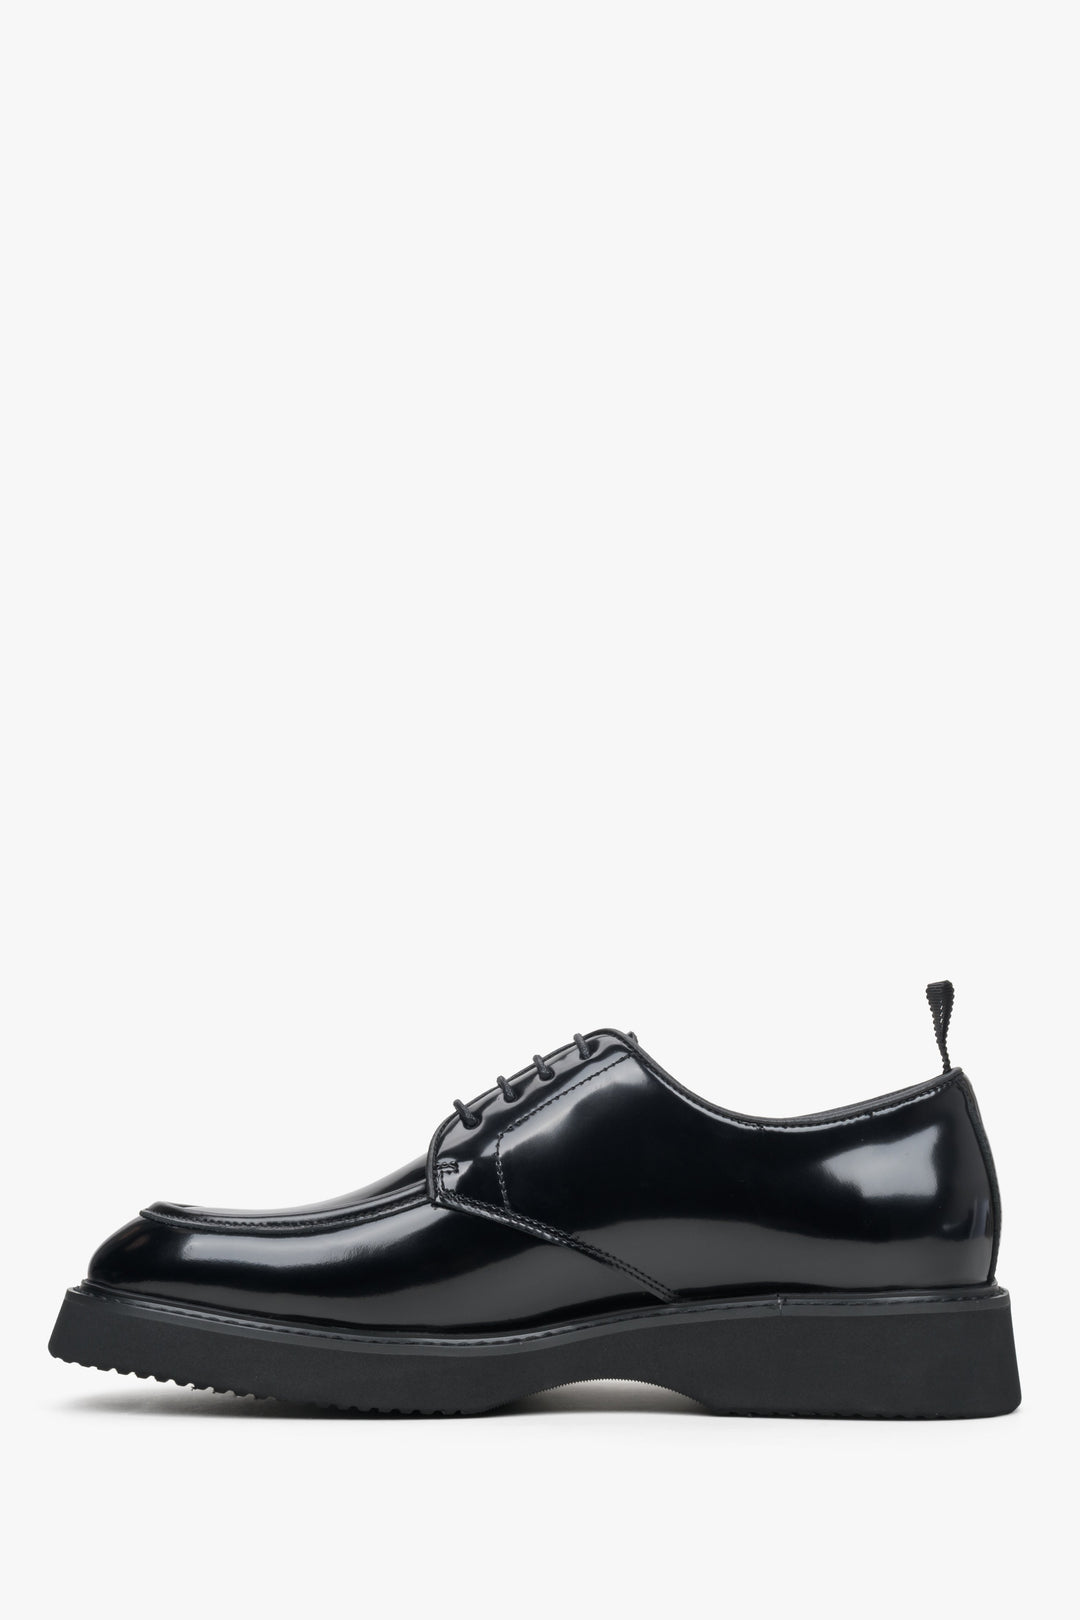 Men's black leather patent brogues by Estro - shoe profile.